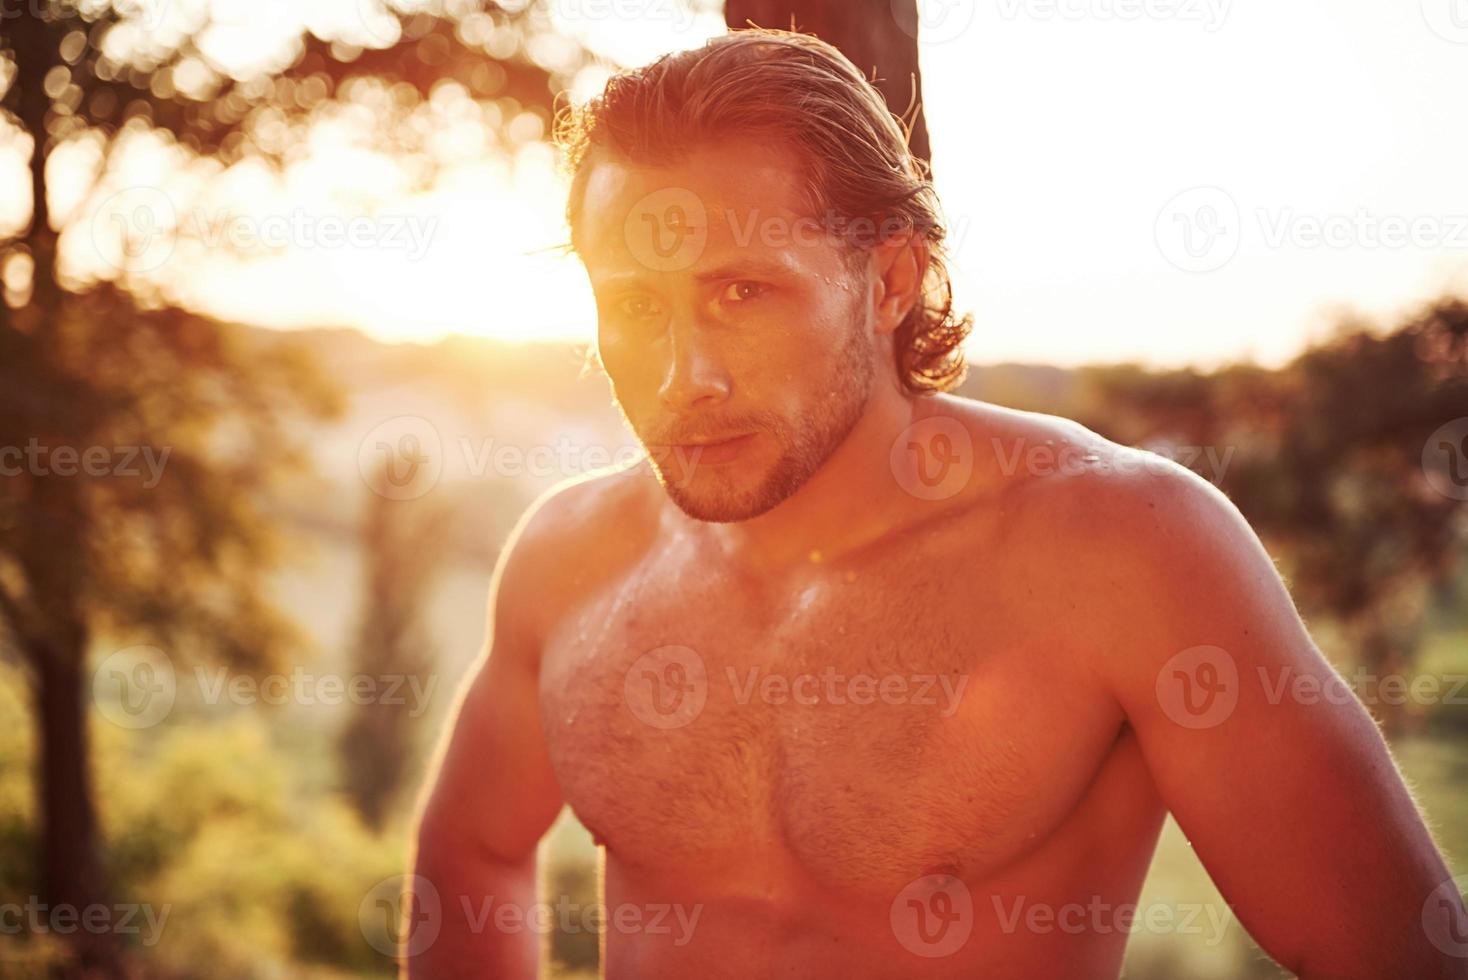 mirada seria y confiada. un hombre guapo sin camisa con un tipo de cuerpo musculoso está en el bosque durante el día foto